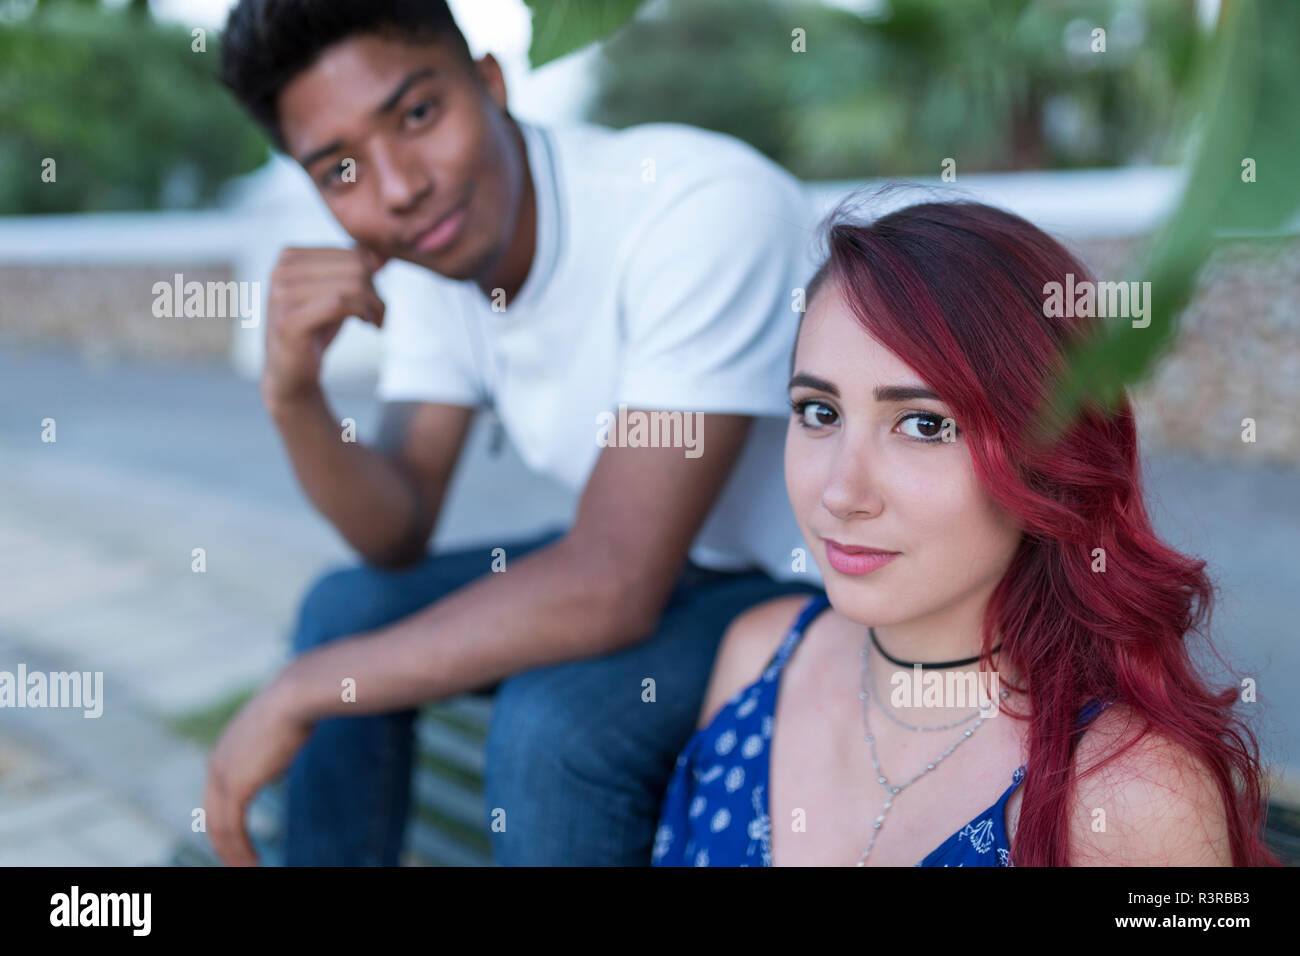 Porträt der jungen Frau mit rot gefärbten Haaren sitzt auf der Bank mit ihrem Freund Stockfoto